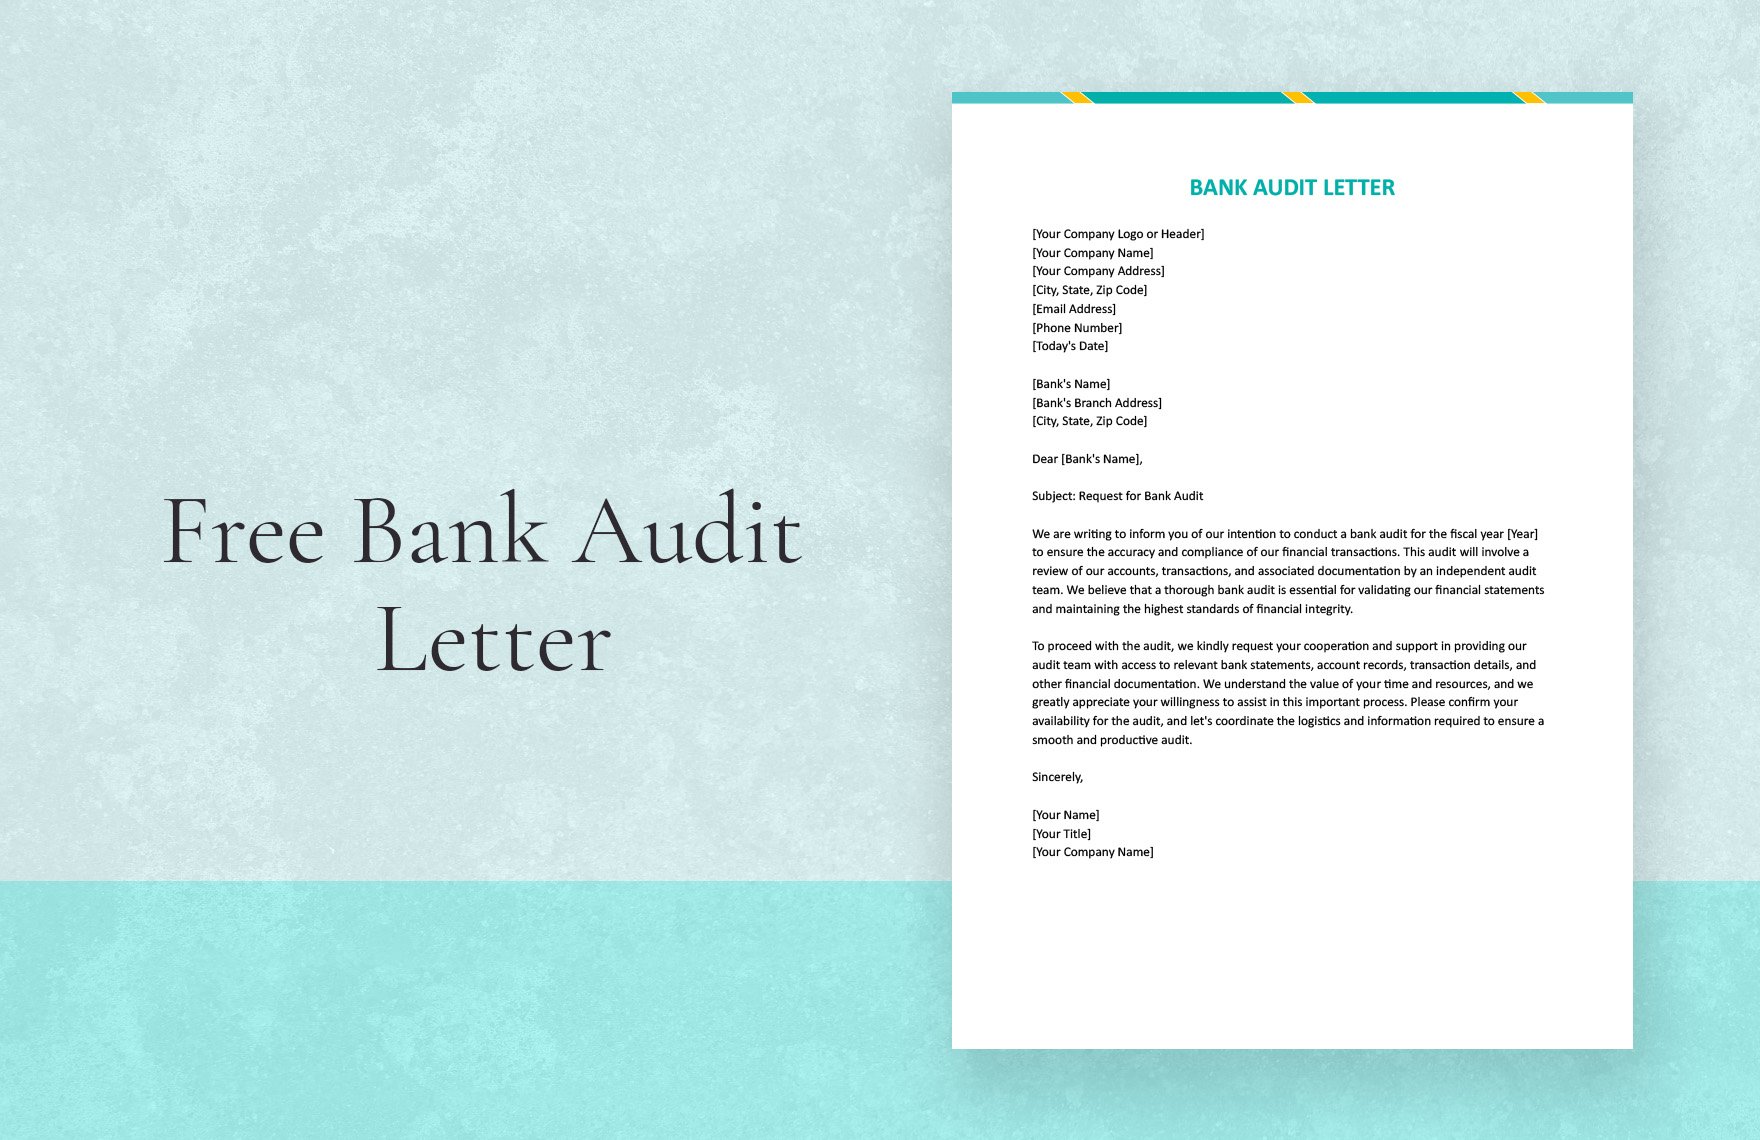 Bank Audit Letter in Word, Google Docs